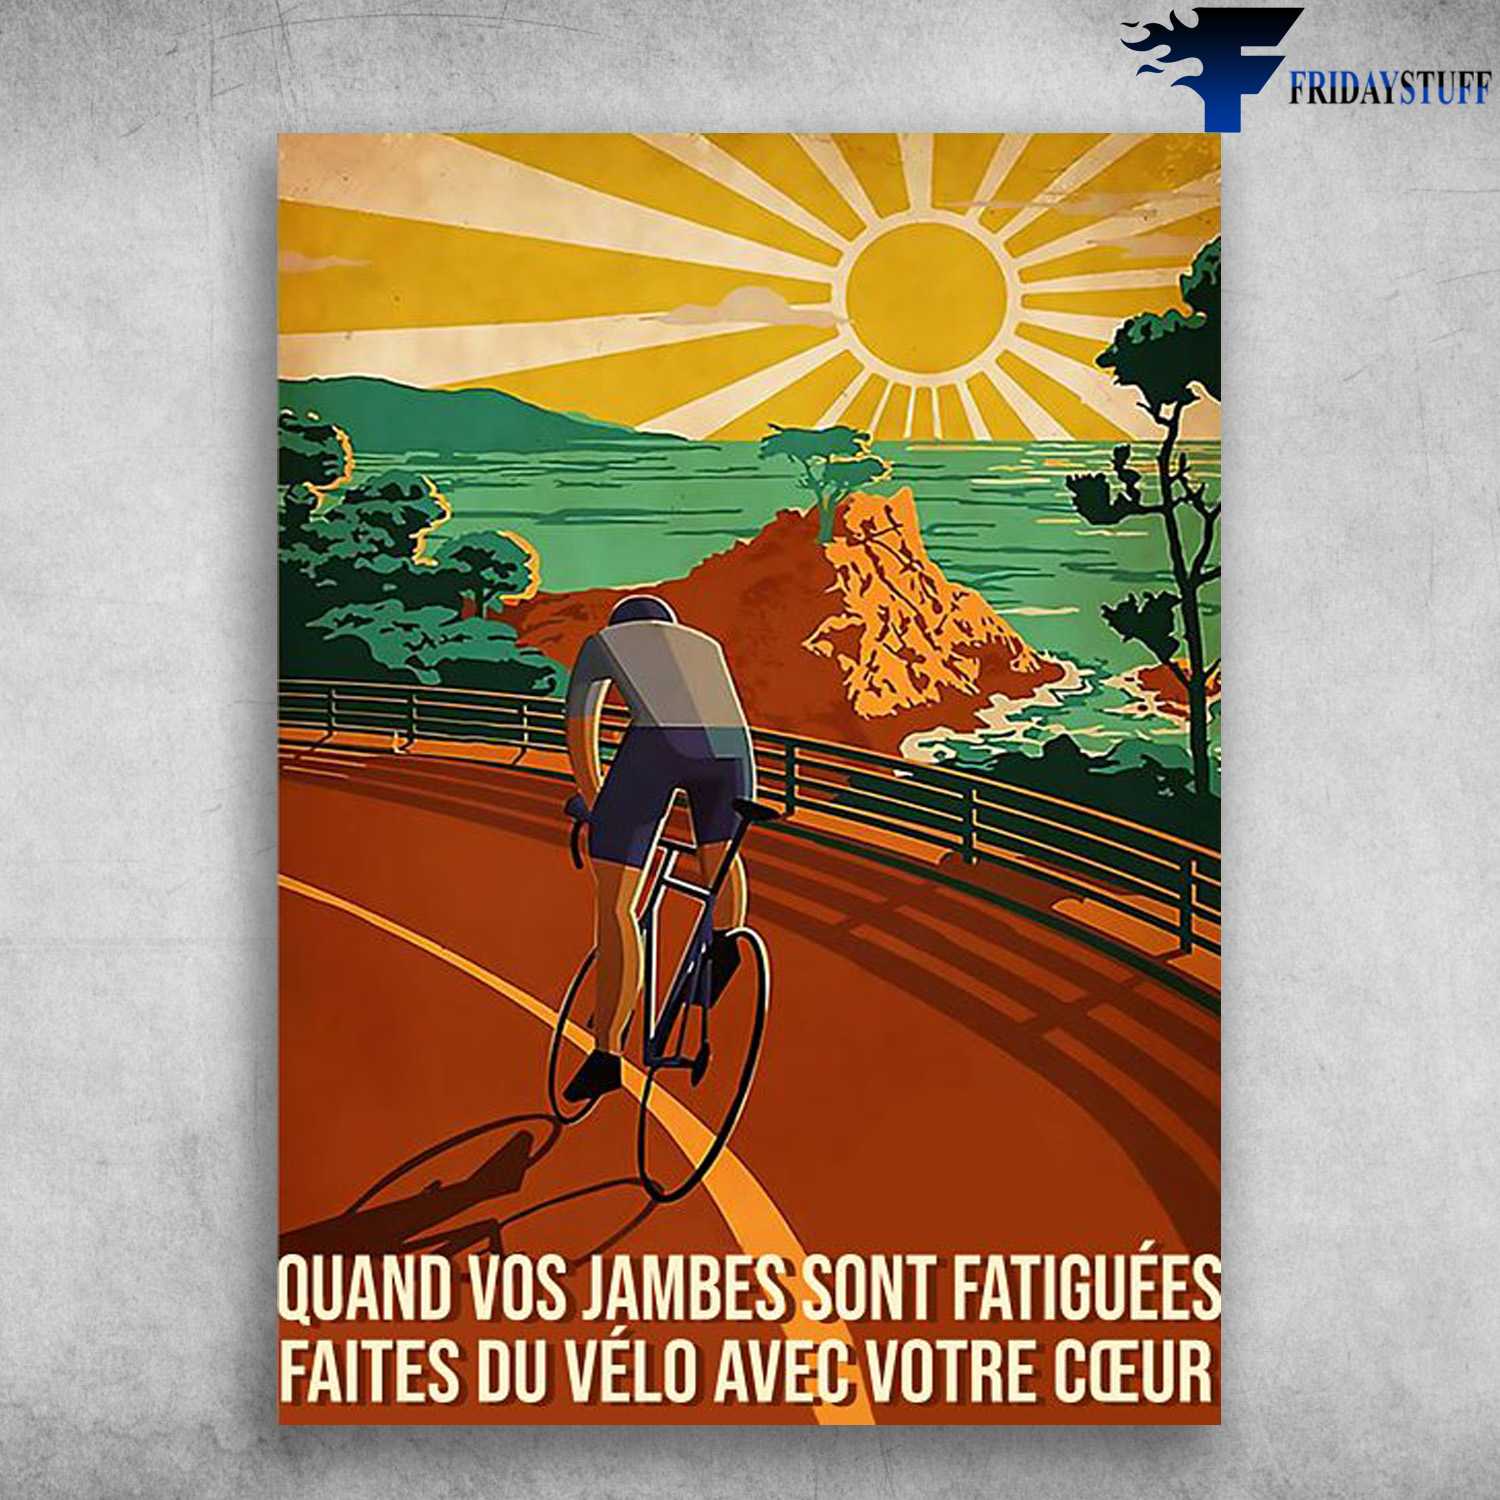 Cycling Man, Biker Lover - Quand Vos Jambes Sont Fatiguées, Faites Du Vélo Avec Votre Ceur